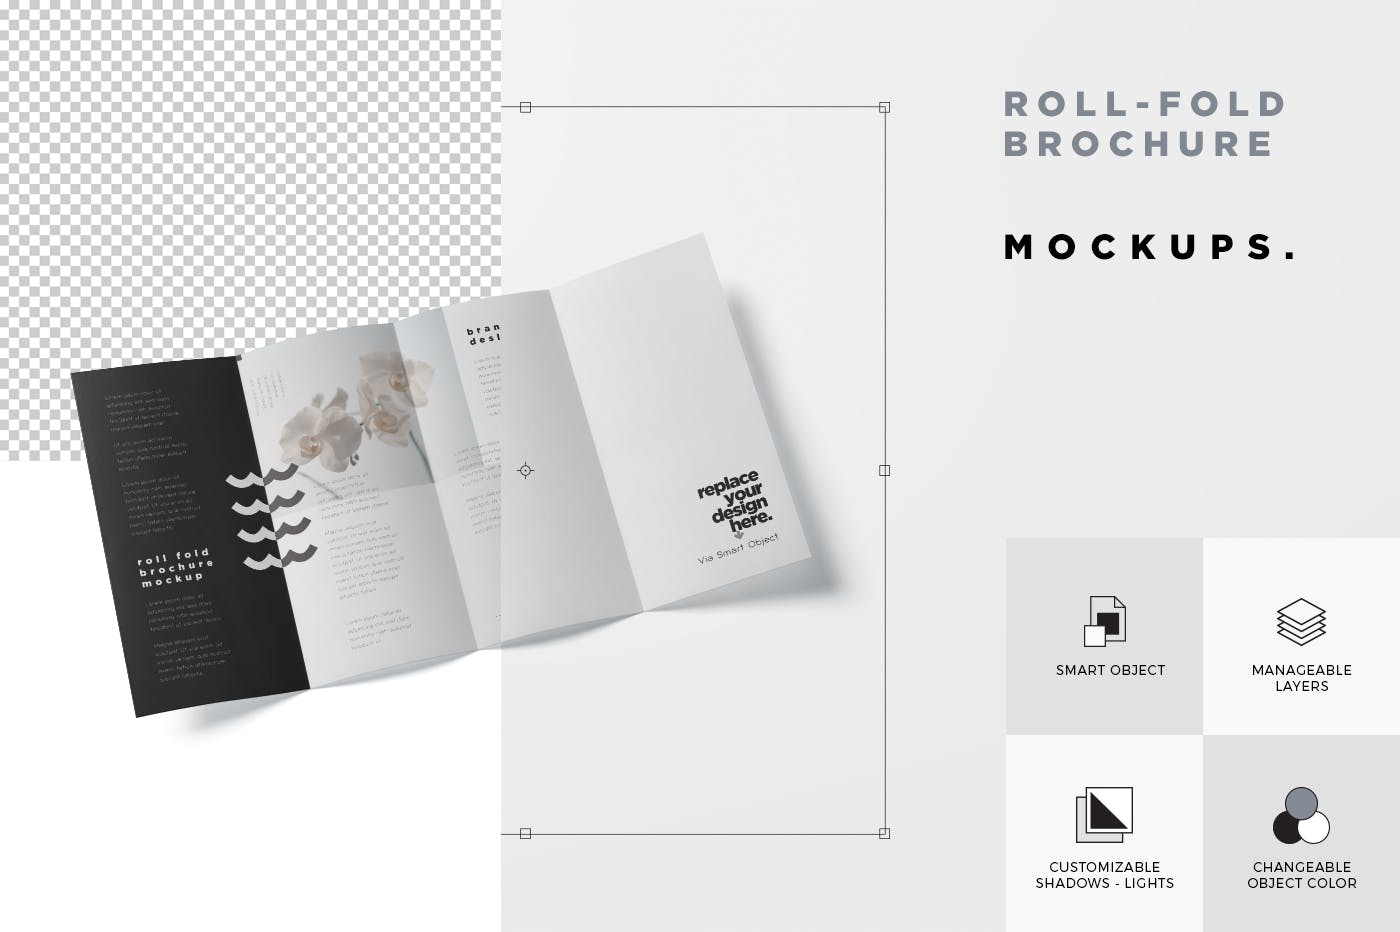 折叠设计风格企业传单/宣传册设计样机大洋岛精选 Roll-Fold Brochure Mockup – DL DIN Lang Size插图6